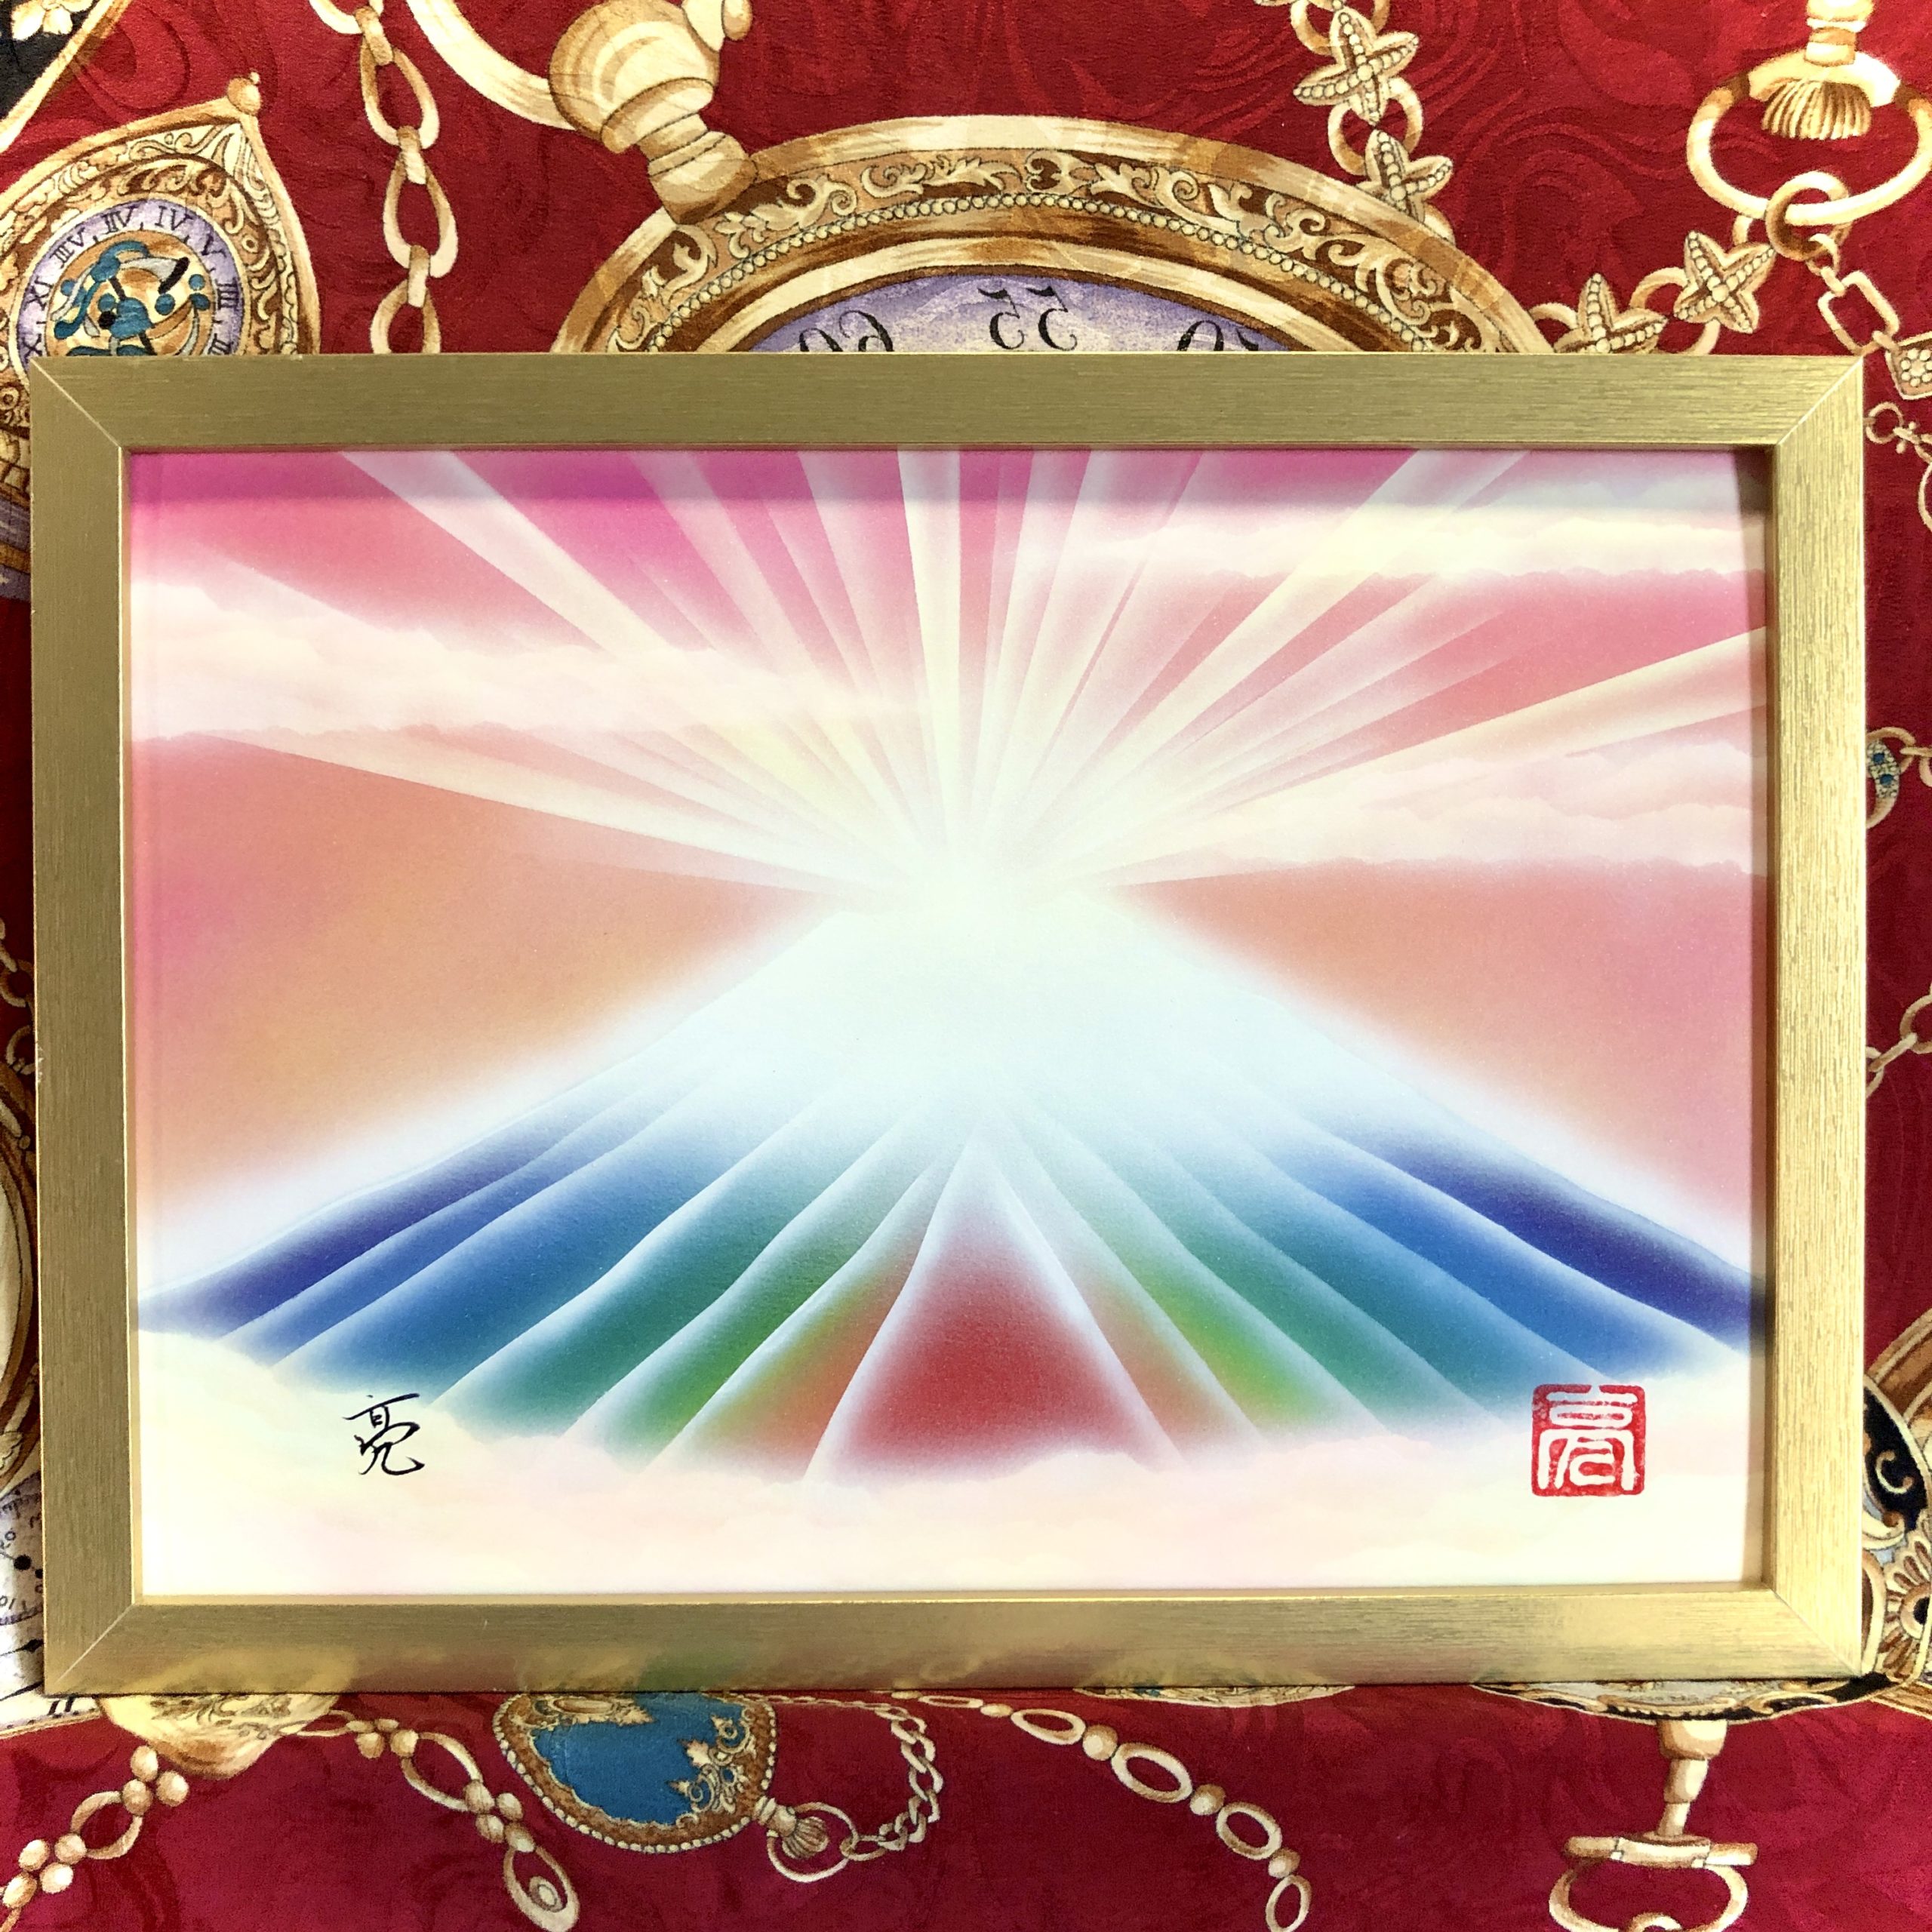 【縁起の良い絵画】幸運をもたらす奇跡の雲海ダイヤモンド虹富士山・開運アート【A4サイズ金額縁付き】